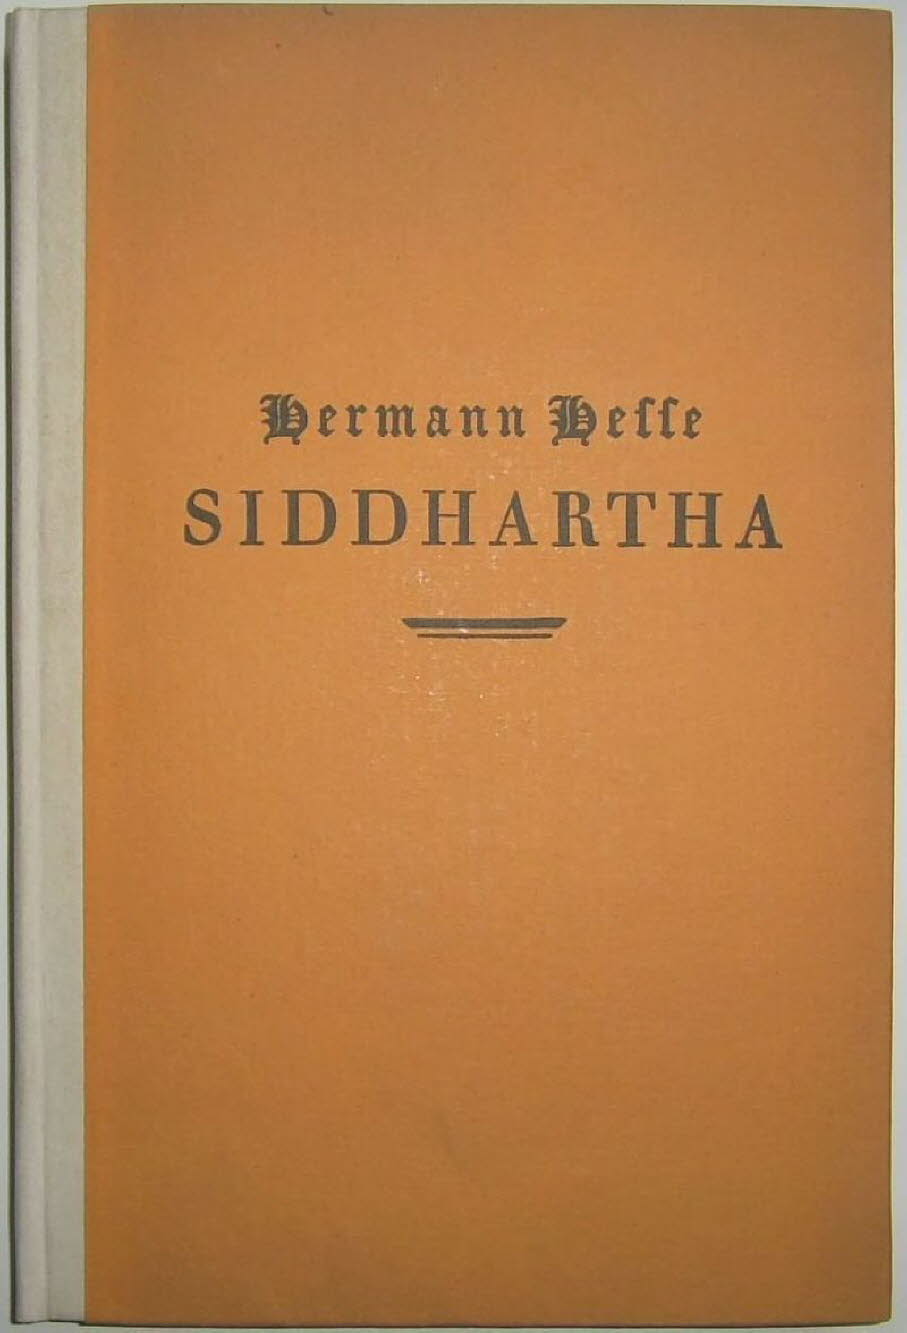 Erstauflage von 1922: Der Roman „Siddhartha“ schrieb Herman Hesse nach einem Besuch in Indien, Indonesien und Sri Lanka. Siddhartha ist ein Roman von Hermann Hesse aus dem Jahr 1922, der sich mit der spirituellen Reise der Selbstfindung eines Mannes namen